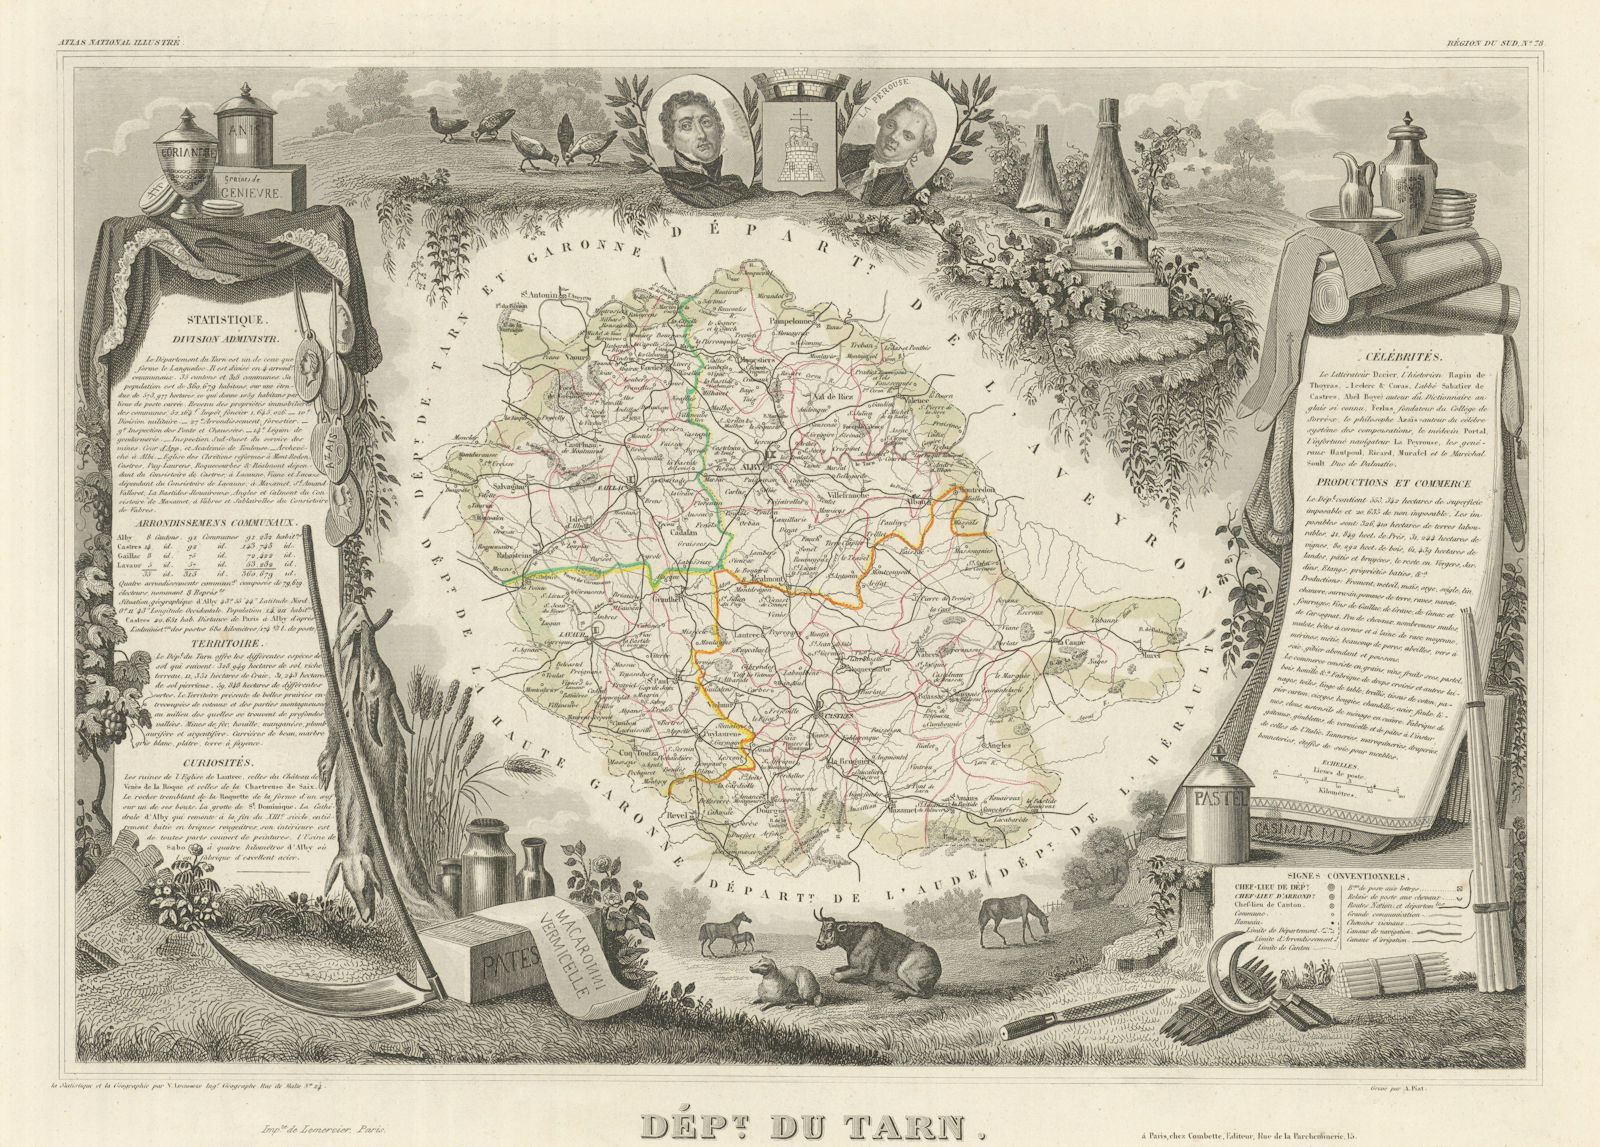 Associate Product Département du TARN. Decorative antique map/carte by Victor LEVASSEUR 1856